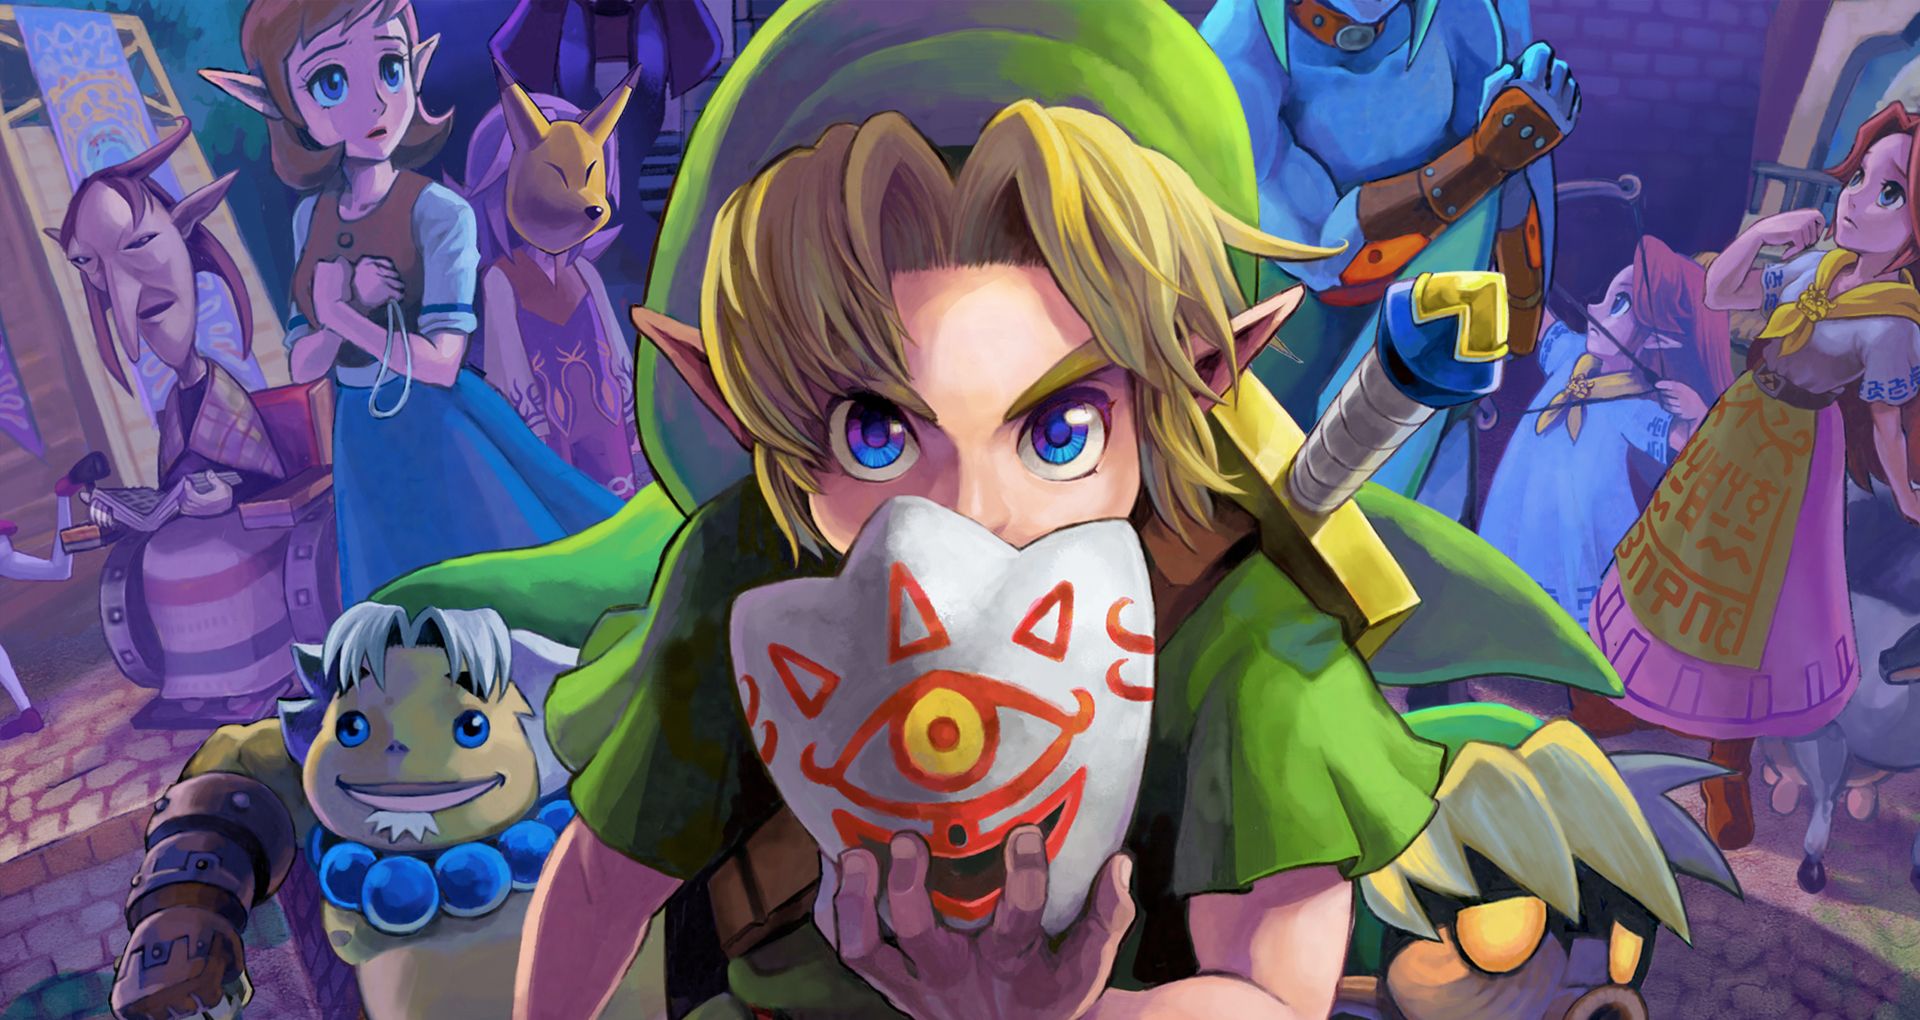 The Legend of Zelda: Link's Awakening DX - Speedrun